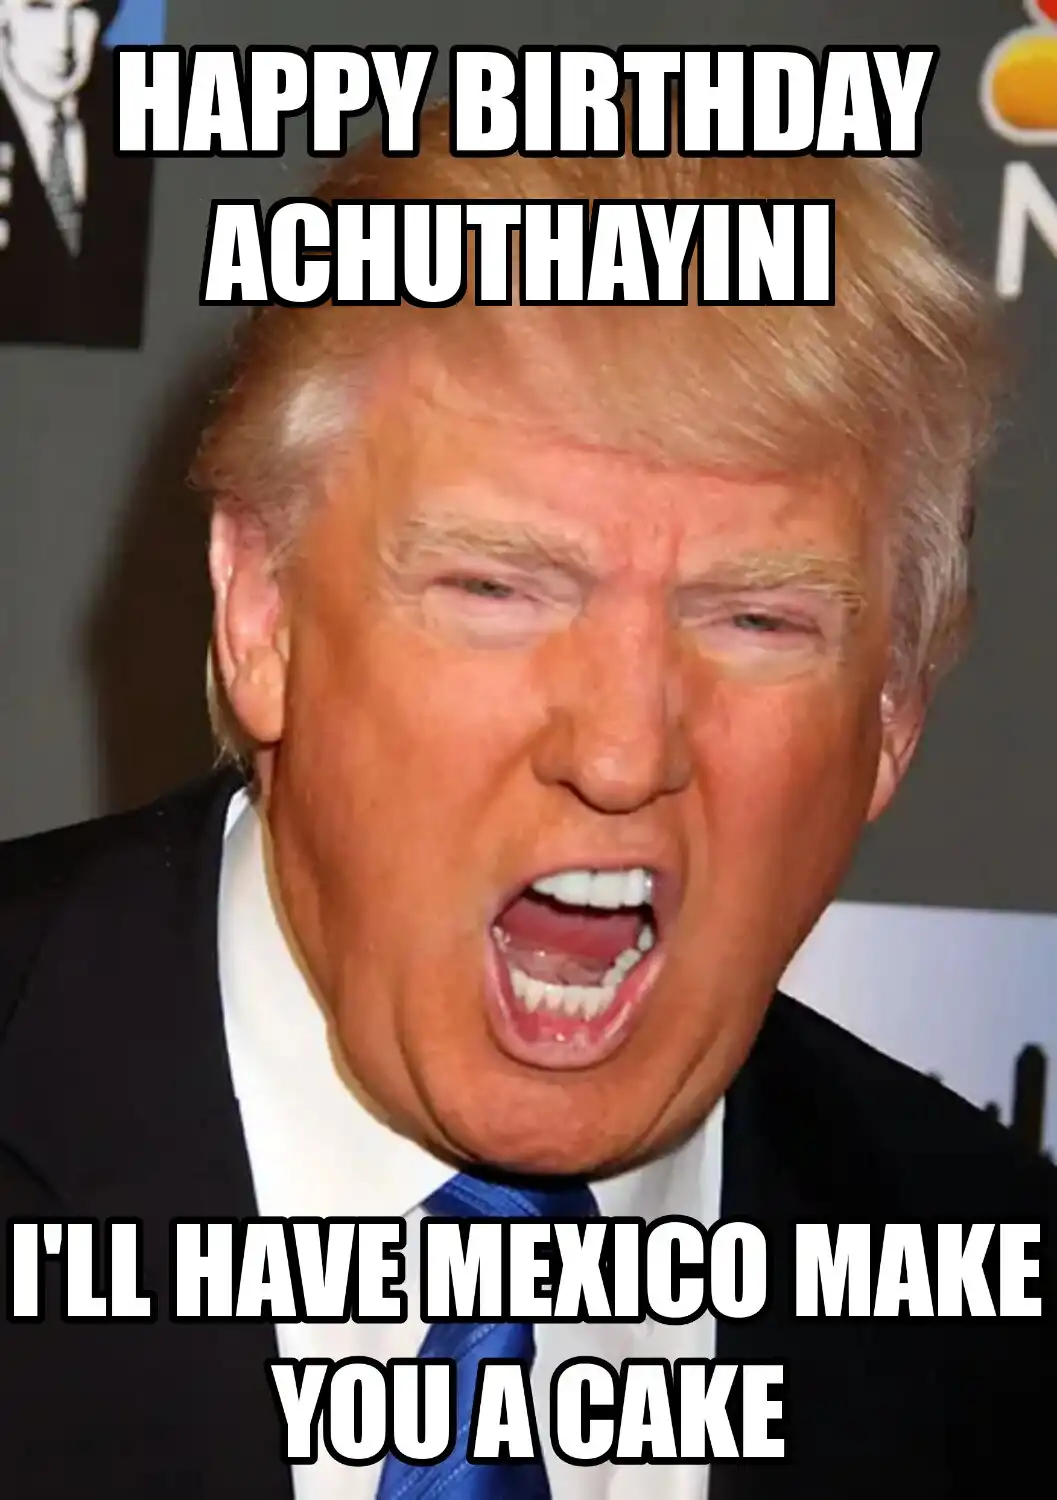 Happy Birthday Achuthayini Mexico Make You A Cake Meme